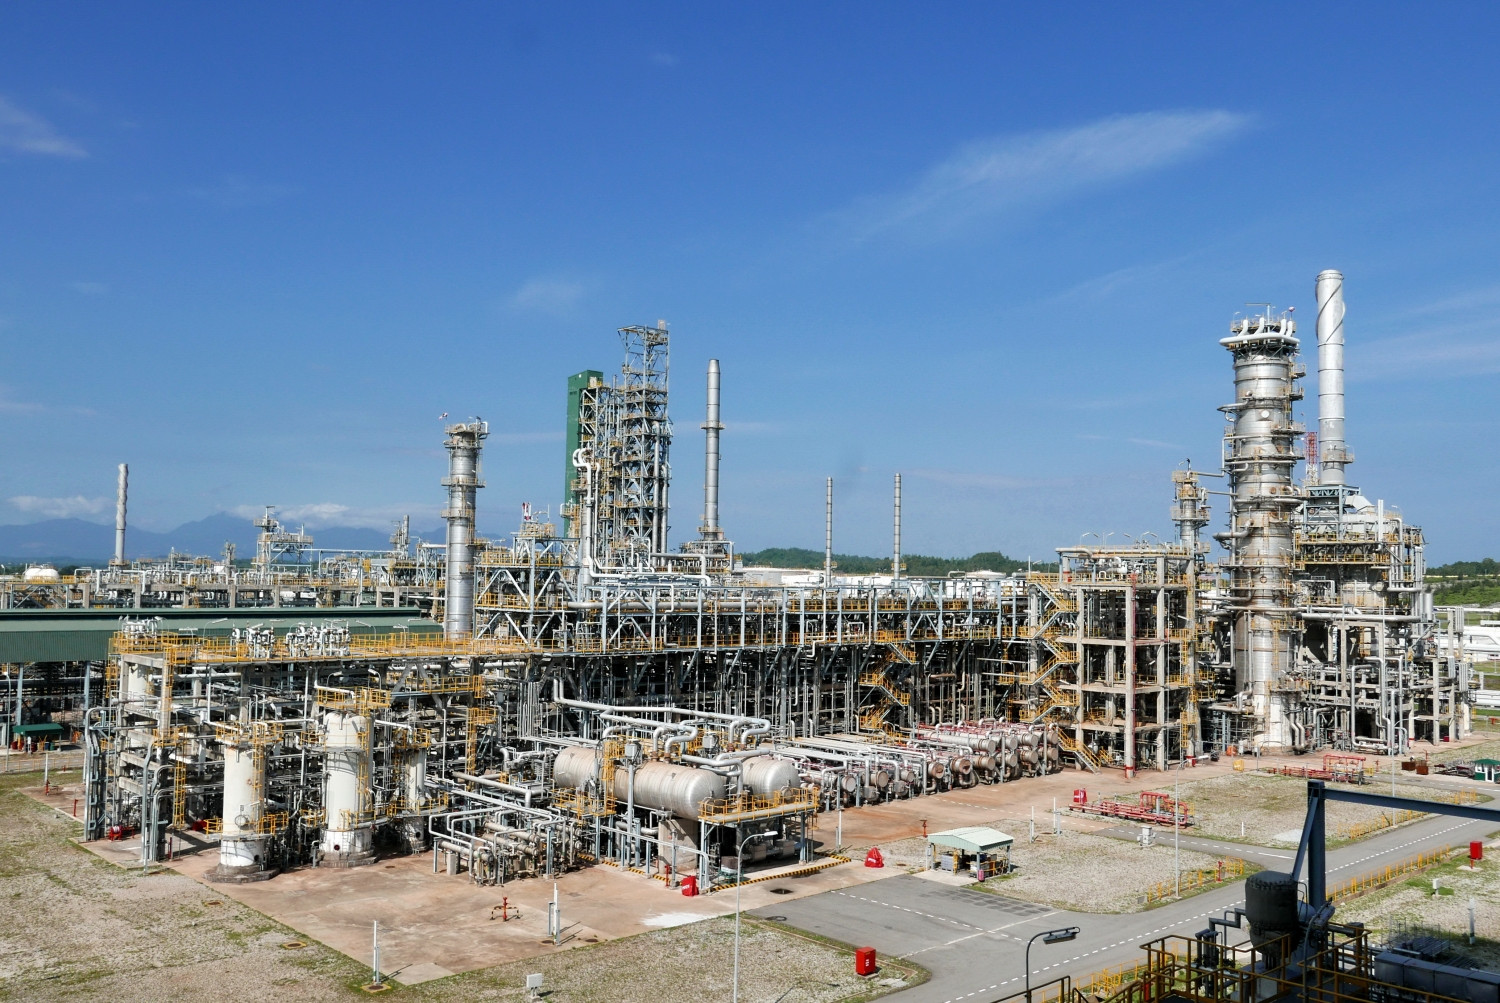 Nhà máy lọc dầu Dung Quất tiếp tục vận hành an toàn, ổn định, với công suất cao, cung cấp khoảng hơn 30% nhu cầu xăng dầu trong nước, giúp đảm bảo an ninh năng lượng quốc gia.